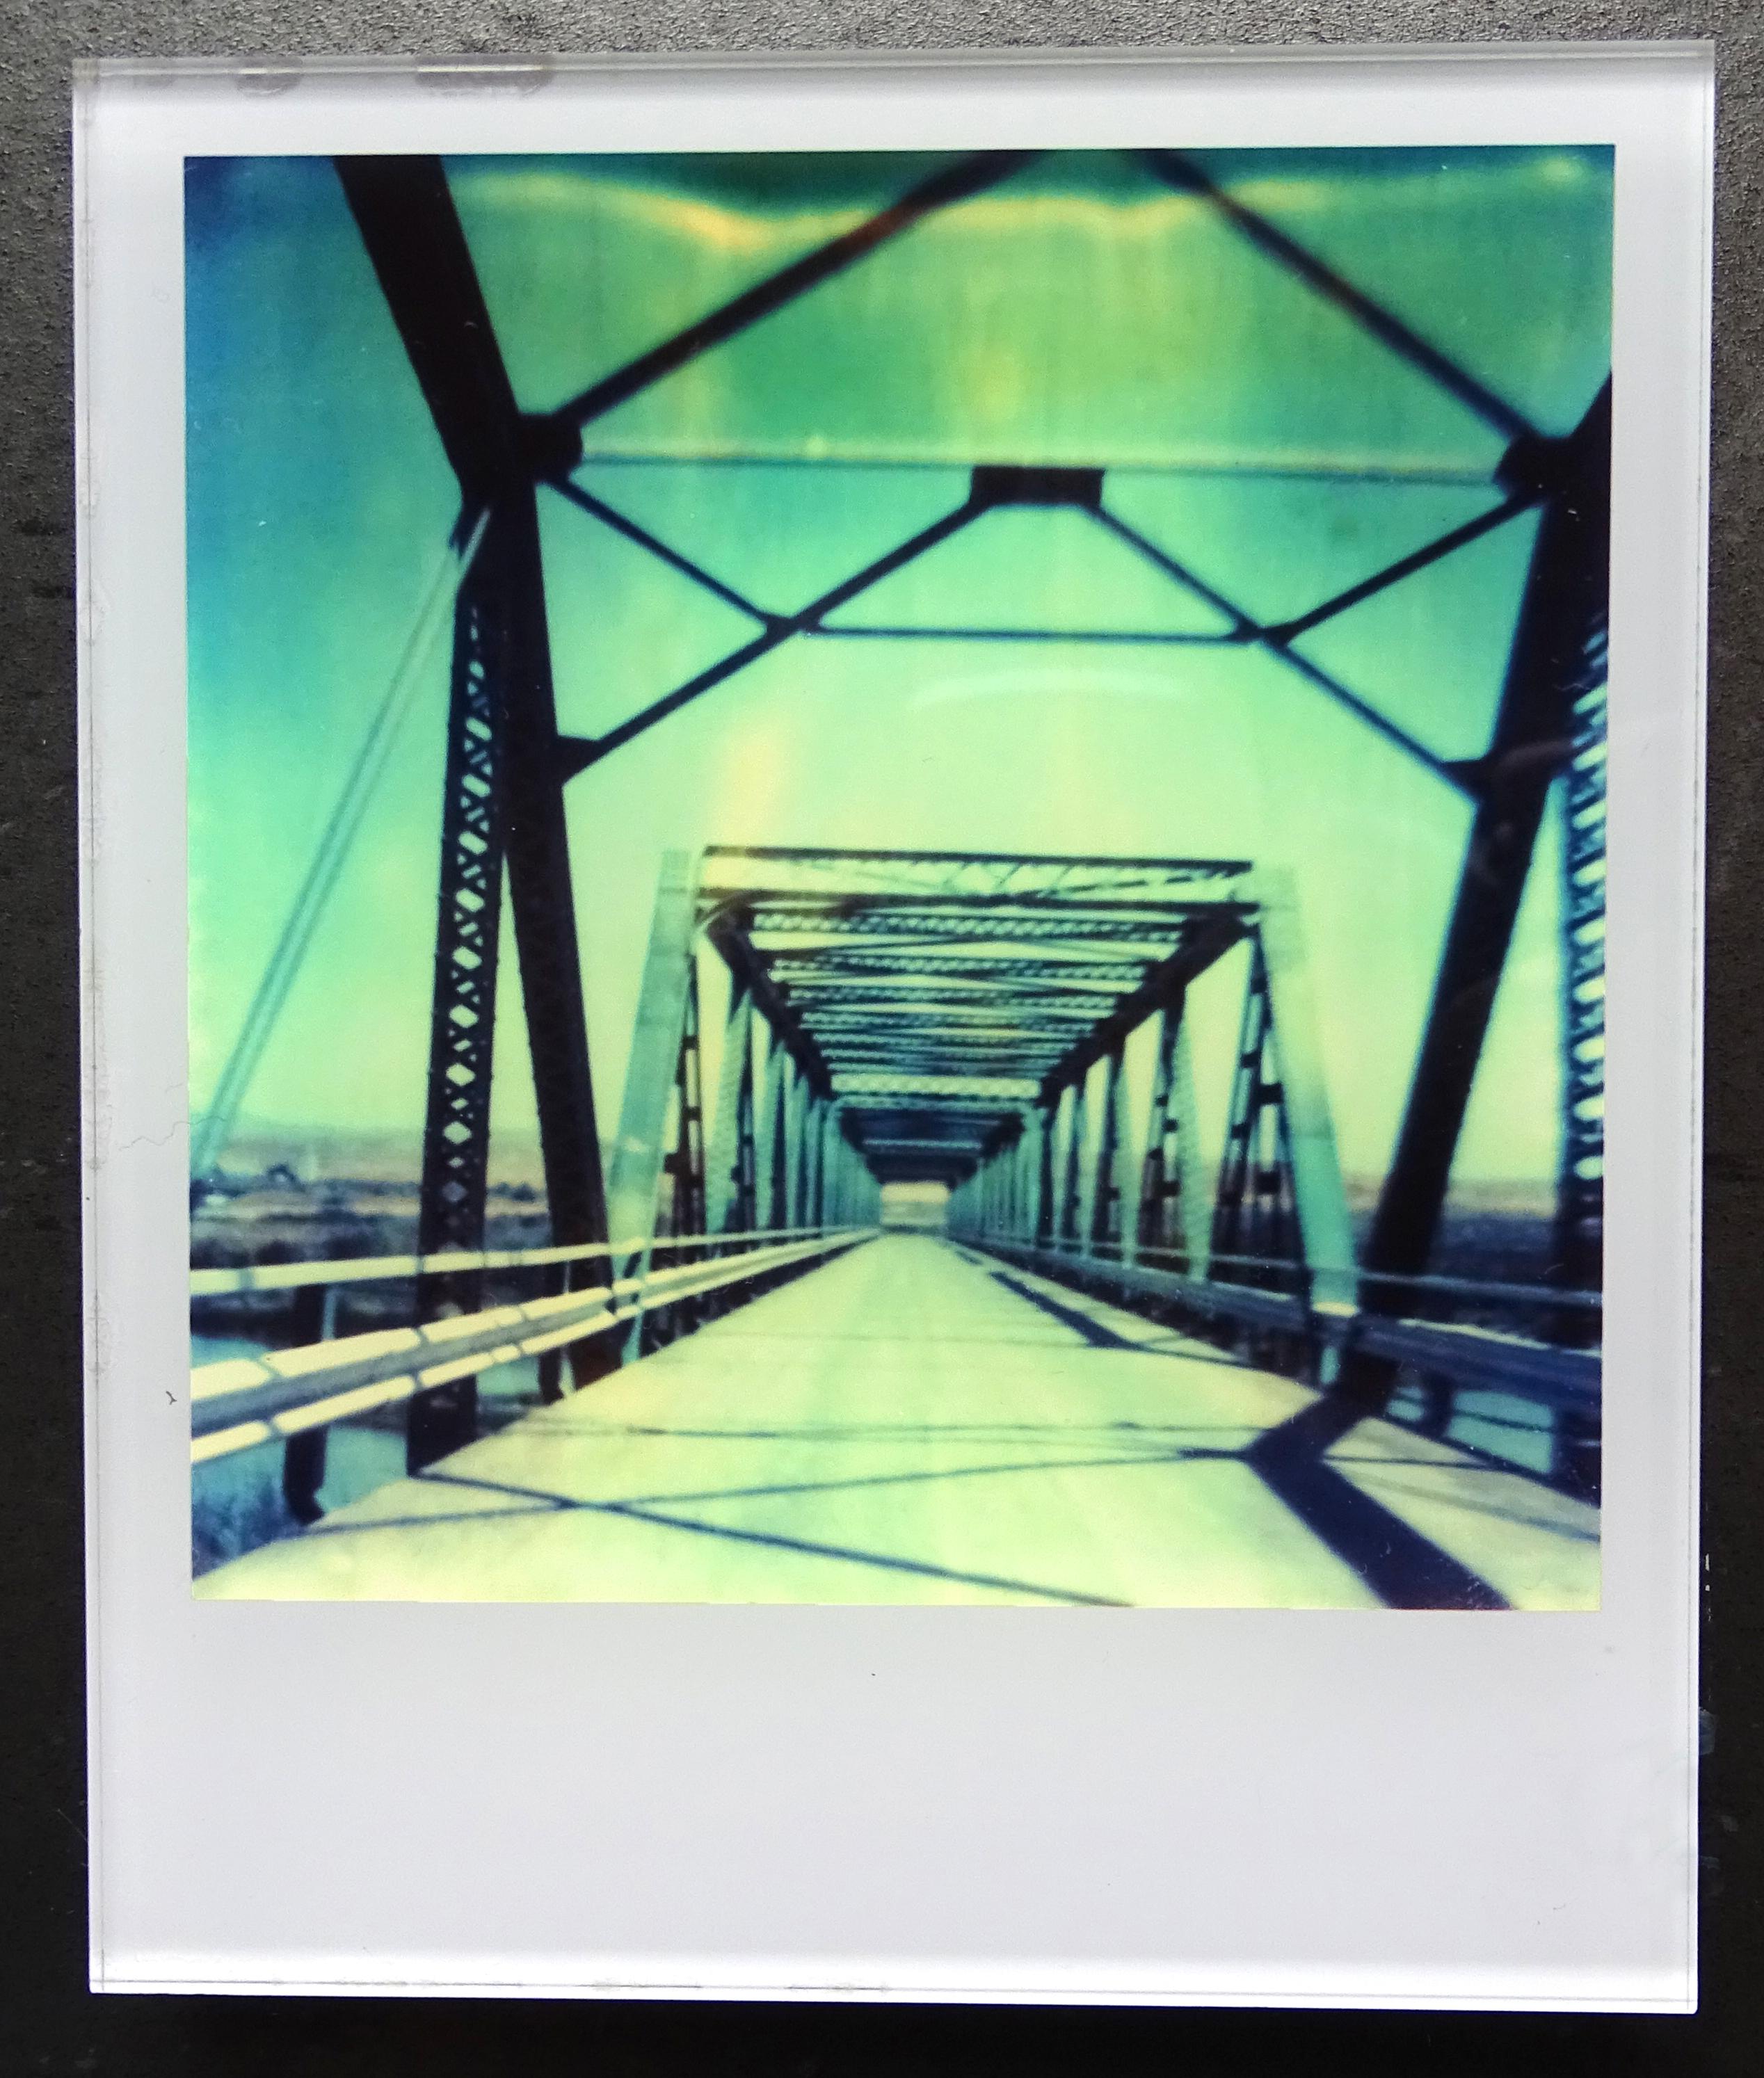 Les minis de Stefanie Schneider
Blue Bridge (Stranger than Paradise), 1999

Signé et marque de signature au verso.
Photographies numériques couleur Lambda basées sur un Polaroïd.
Pris en sandwich entre du plexiglas (épaisseur 0,7cm)

Polaroid sized